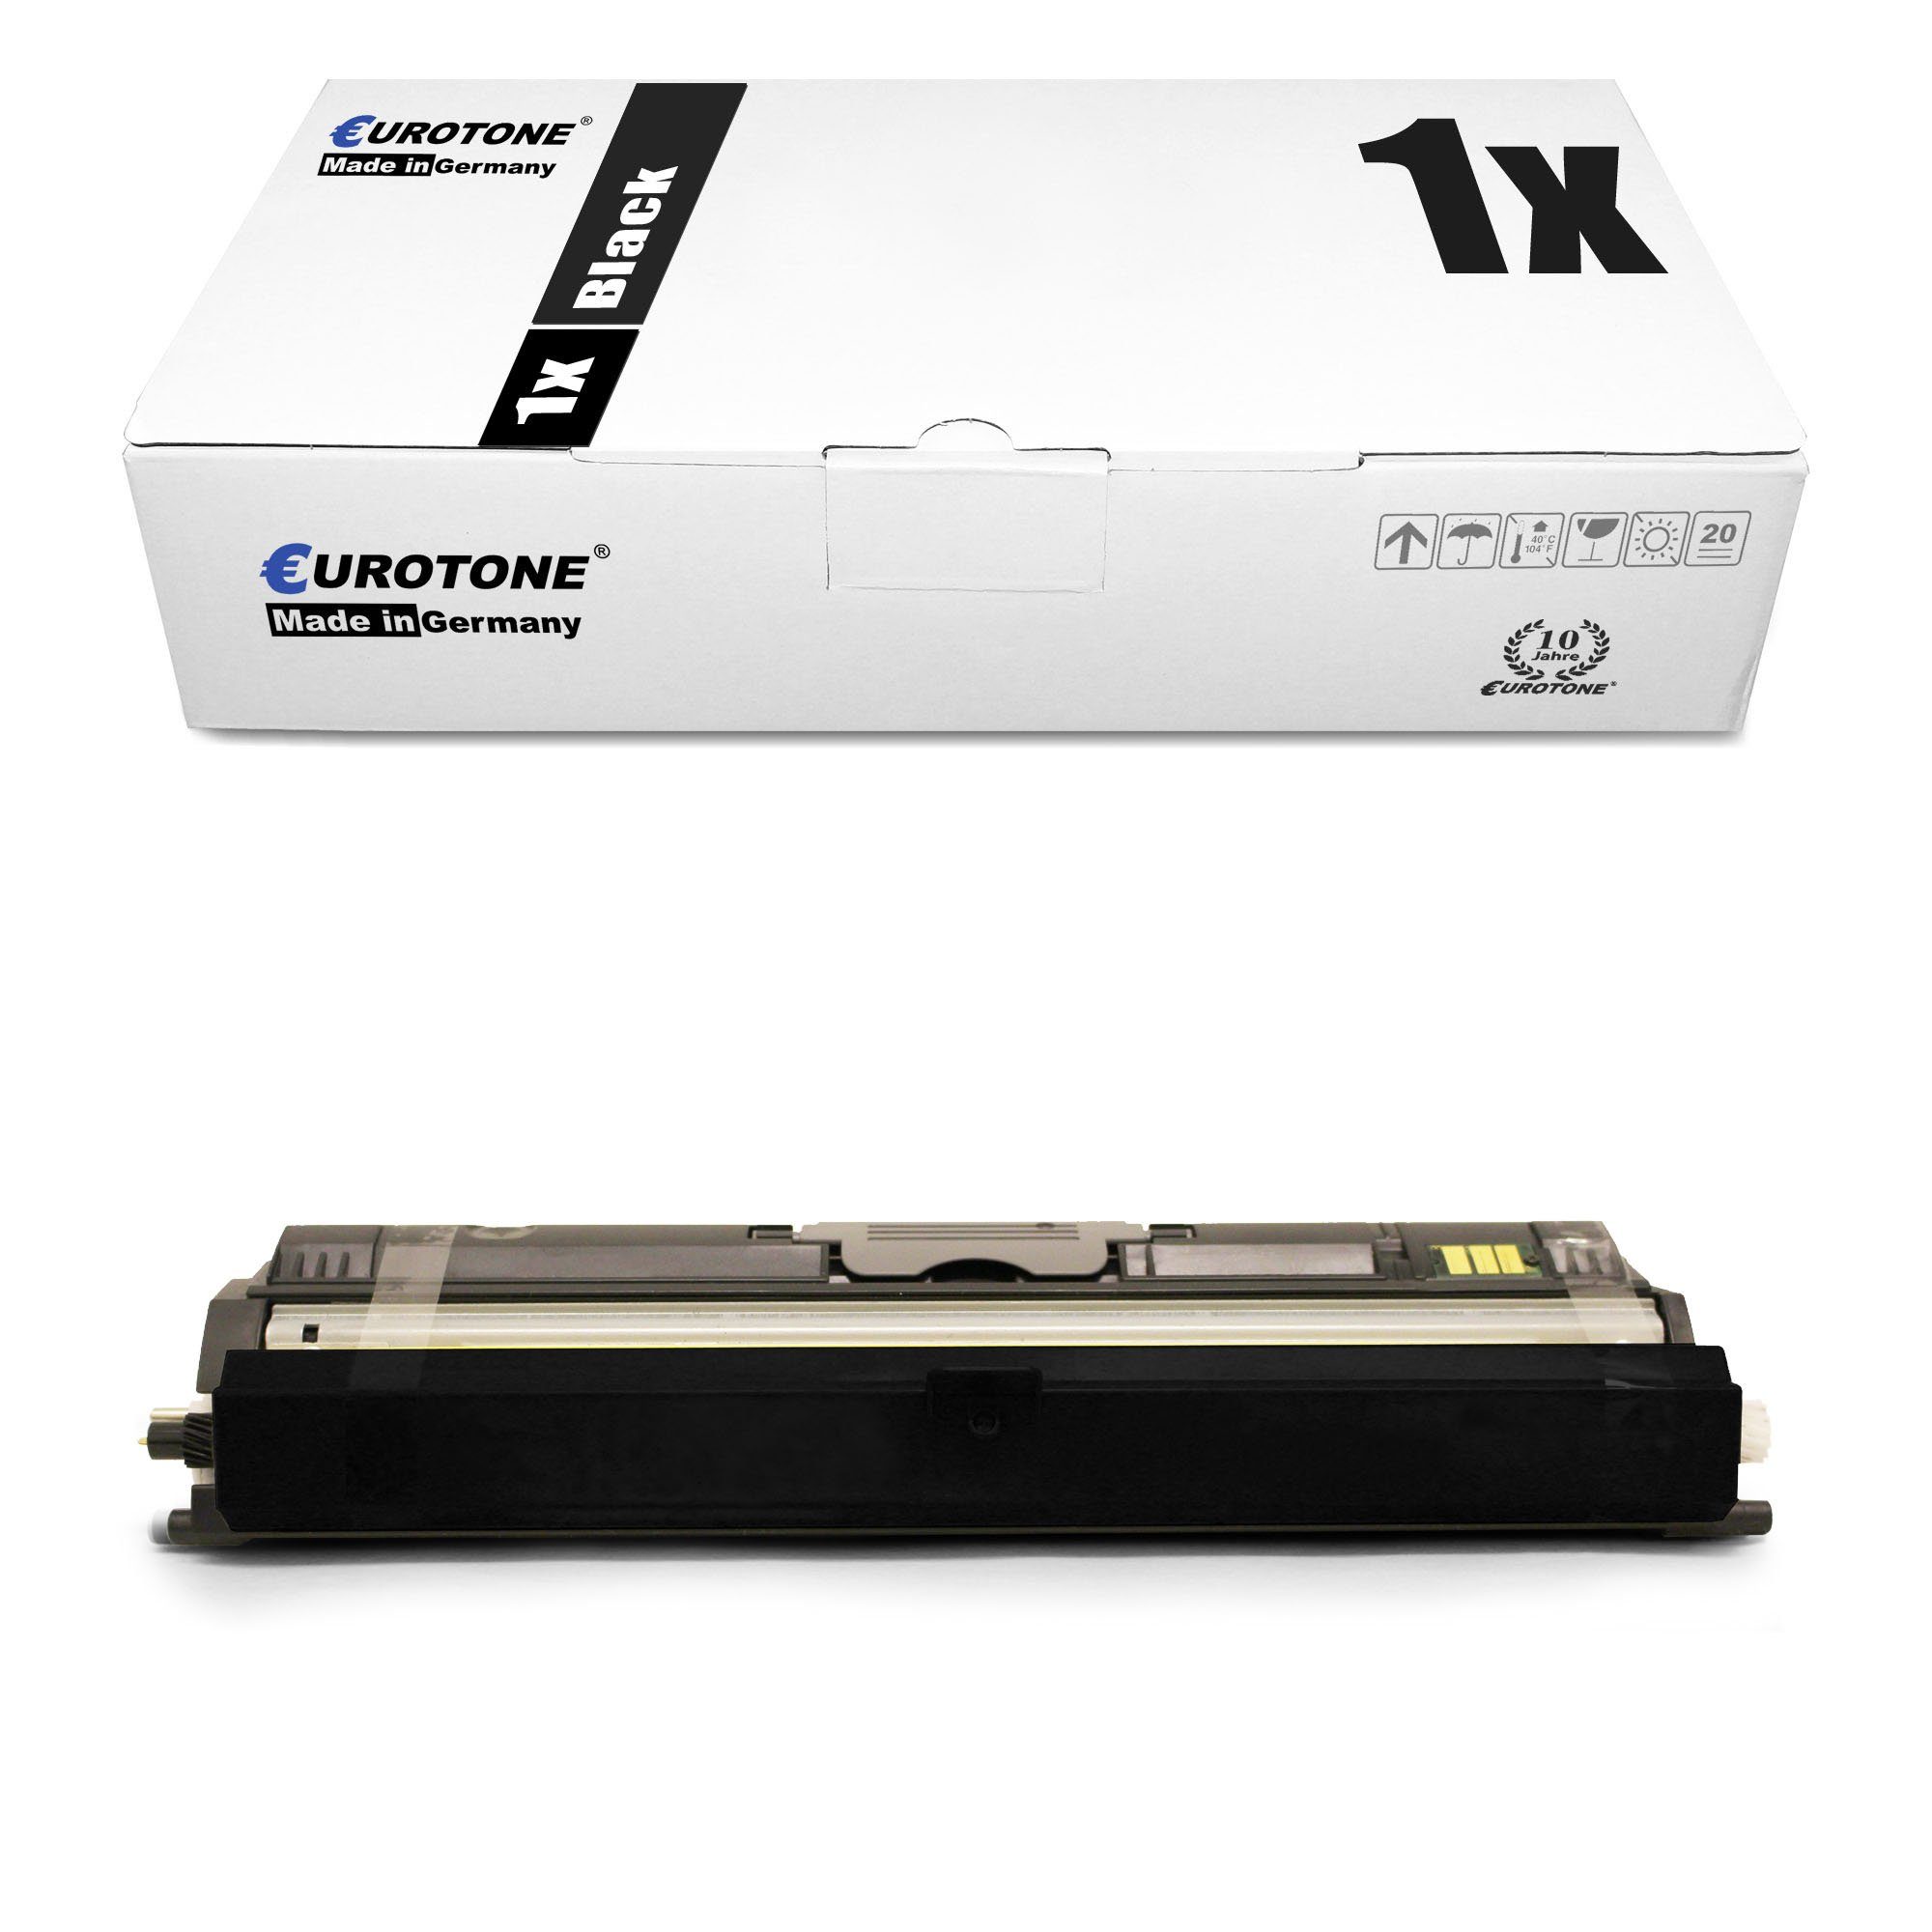 Eurotone Tonerkartusche Toner ersetzt Xerox 106R01469 Black